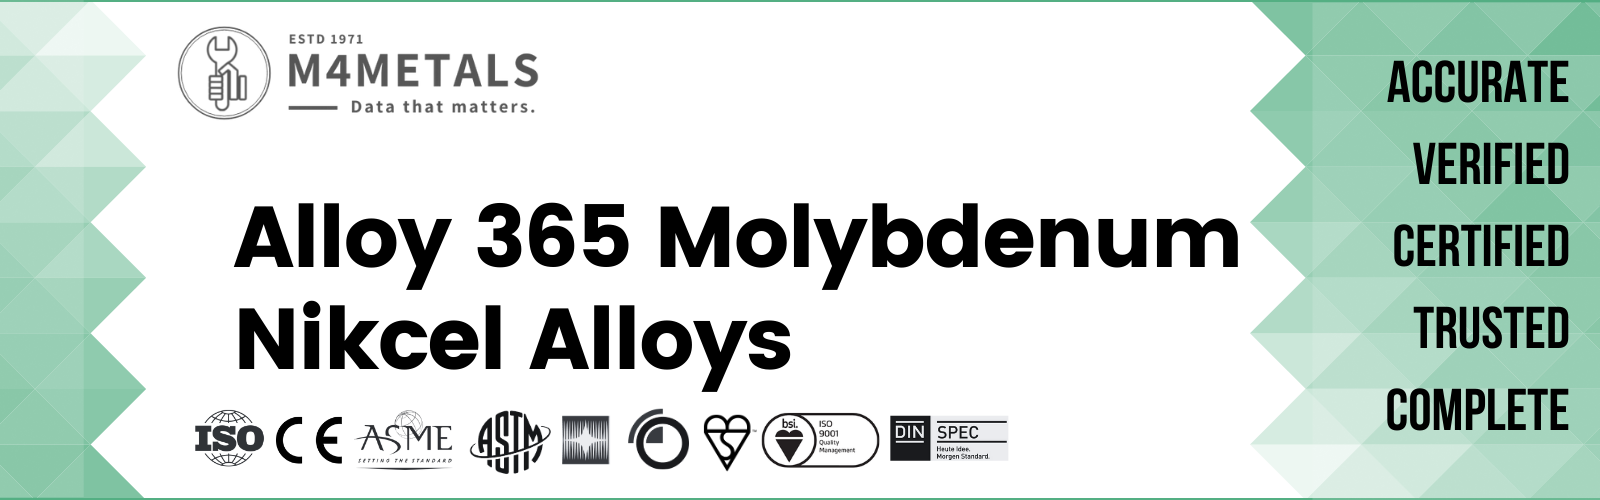 Molybdenum Alloy 365